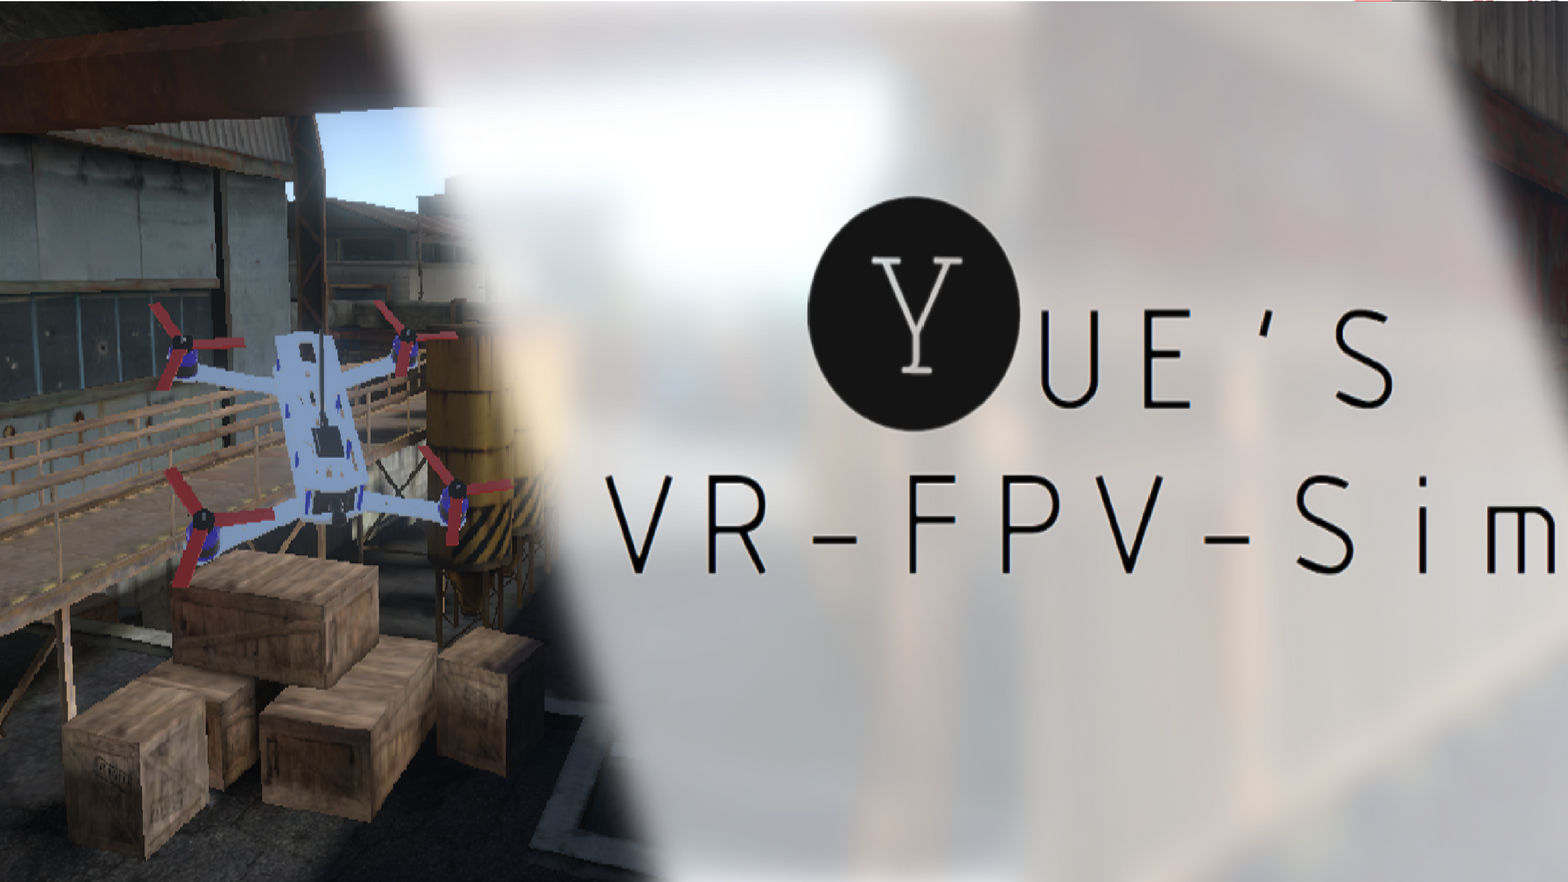 Yue's VR-FPV-Sim